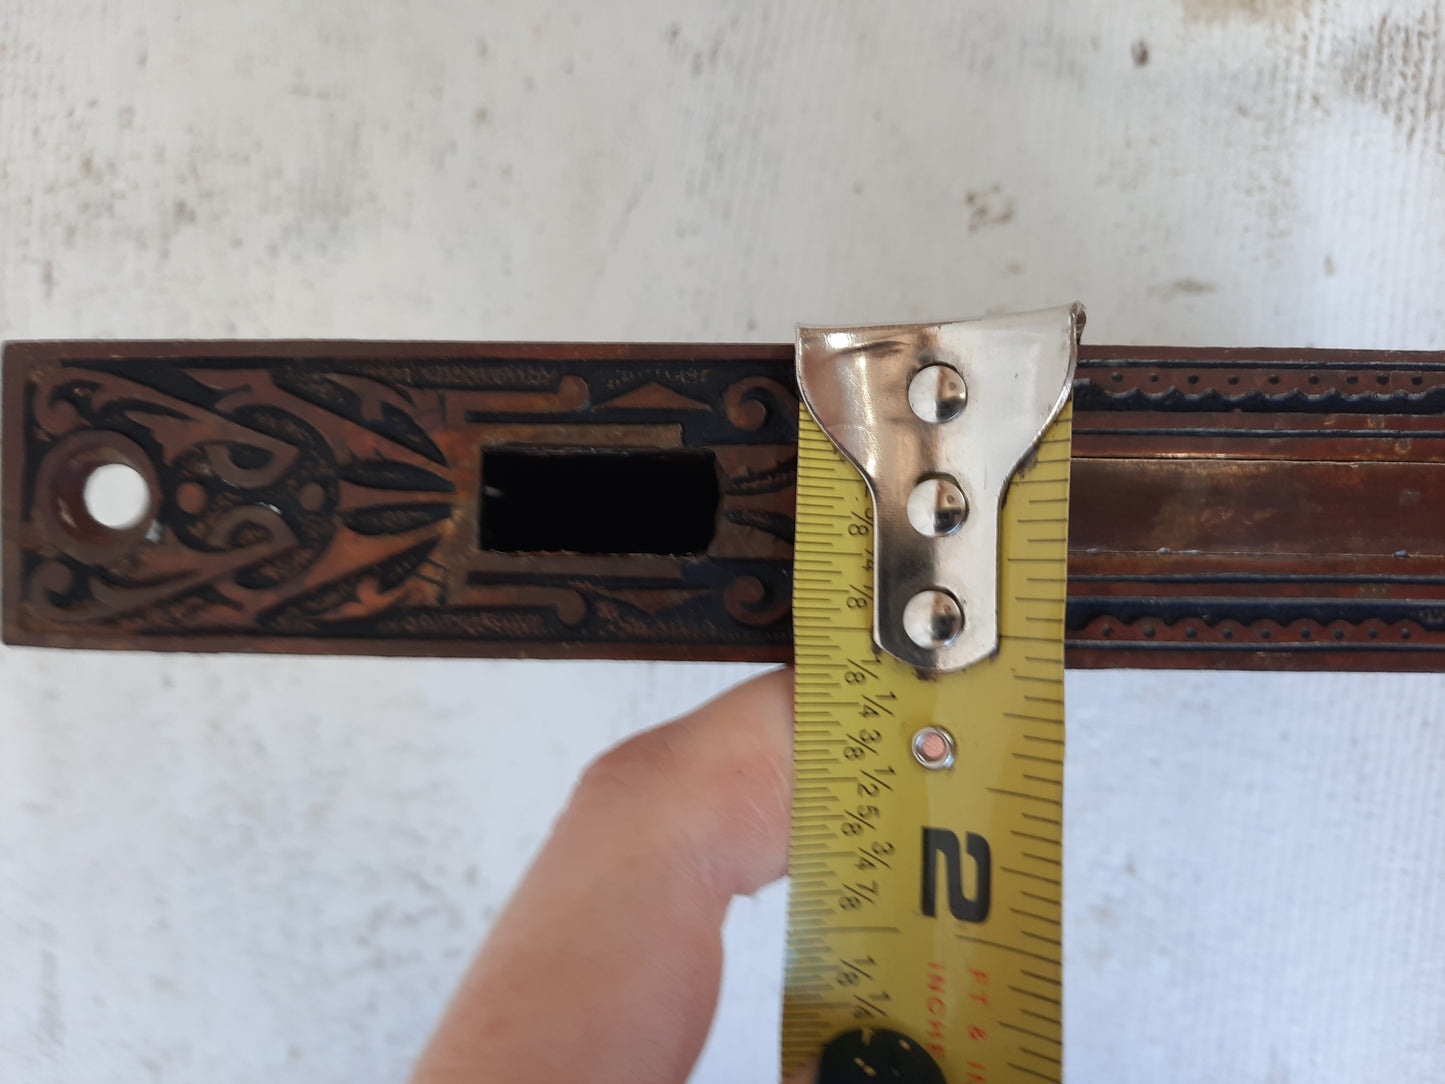 Pair of Ornate Antique Pocket Door Mortise Lock, Double Rolling Door Lock Working Condition